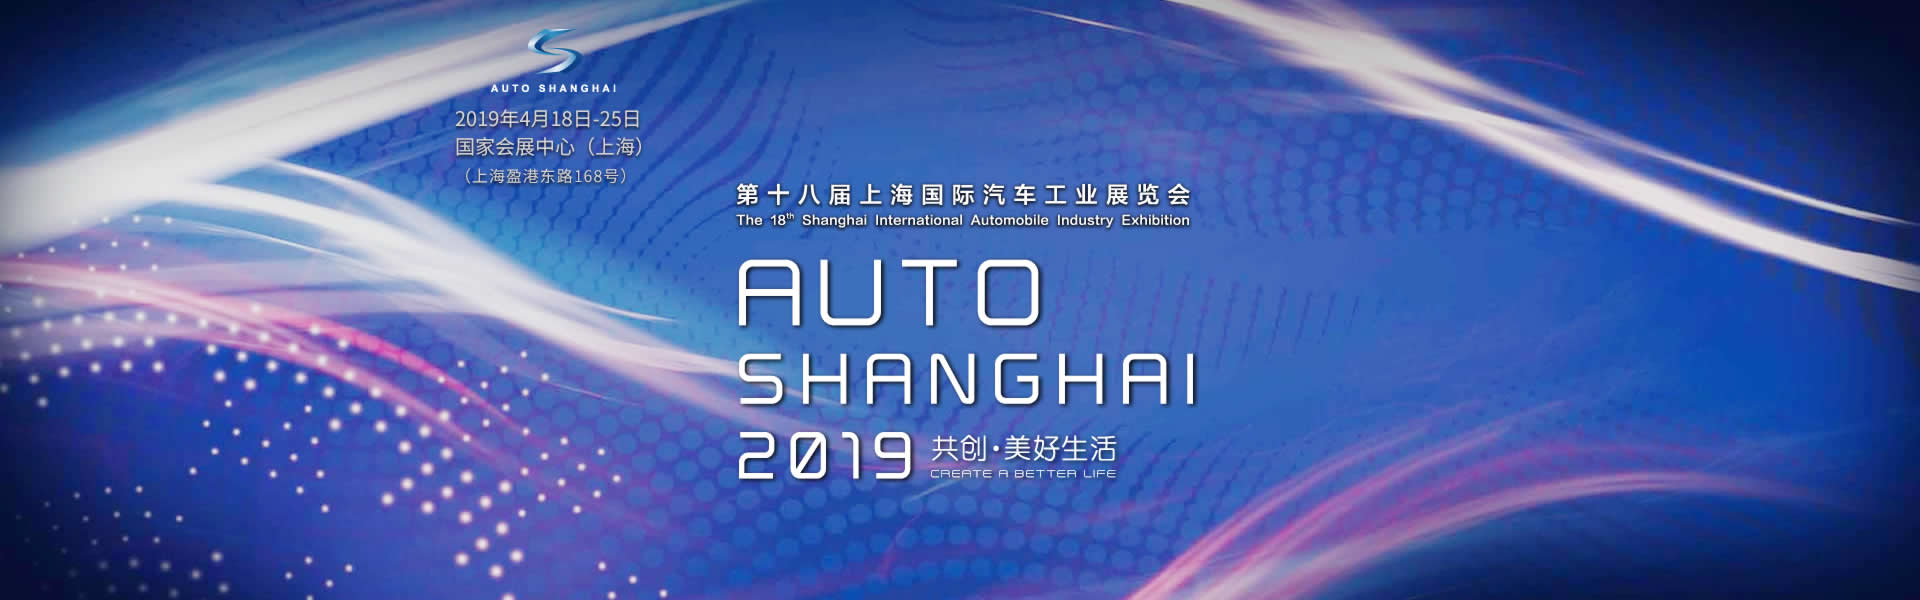 康明斯展台 共创·美好未来 第十八届上海国际汽车工业展览会